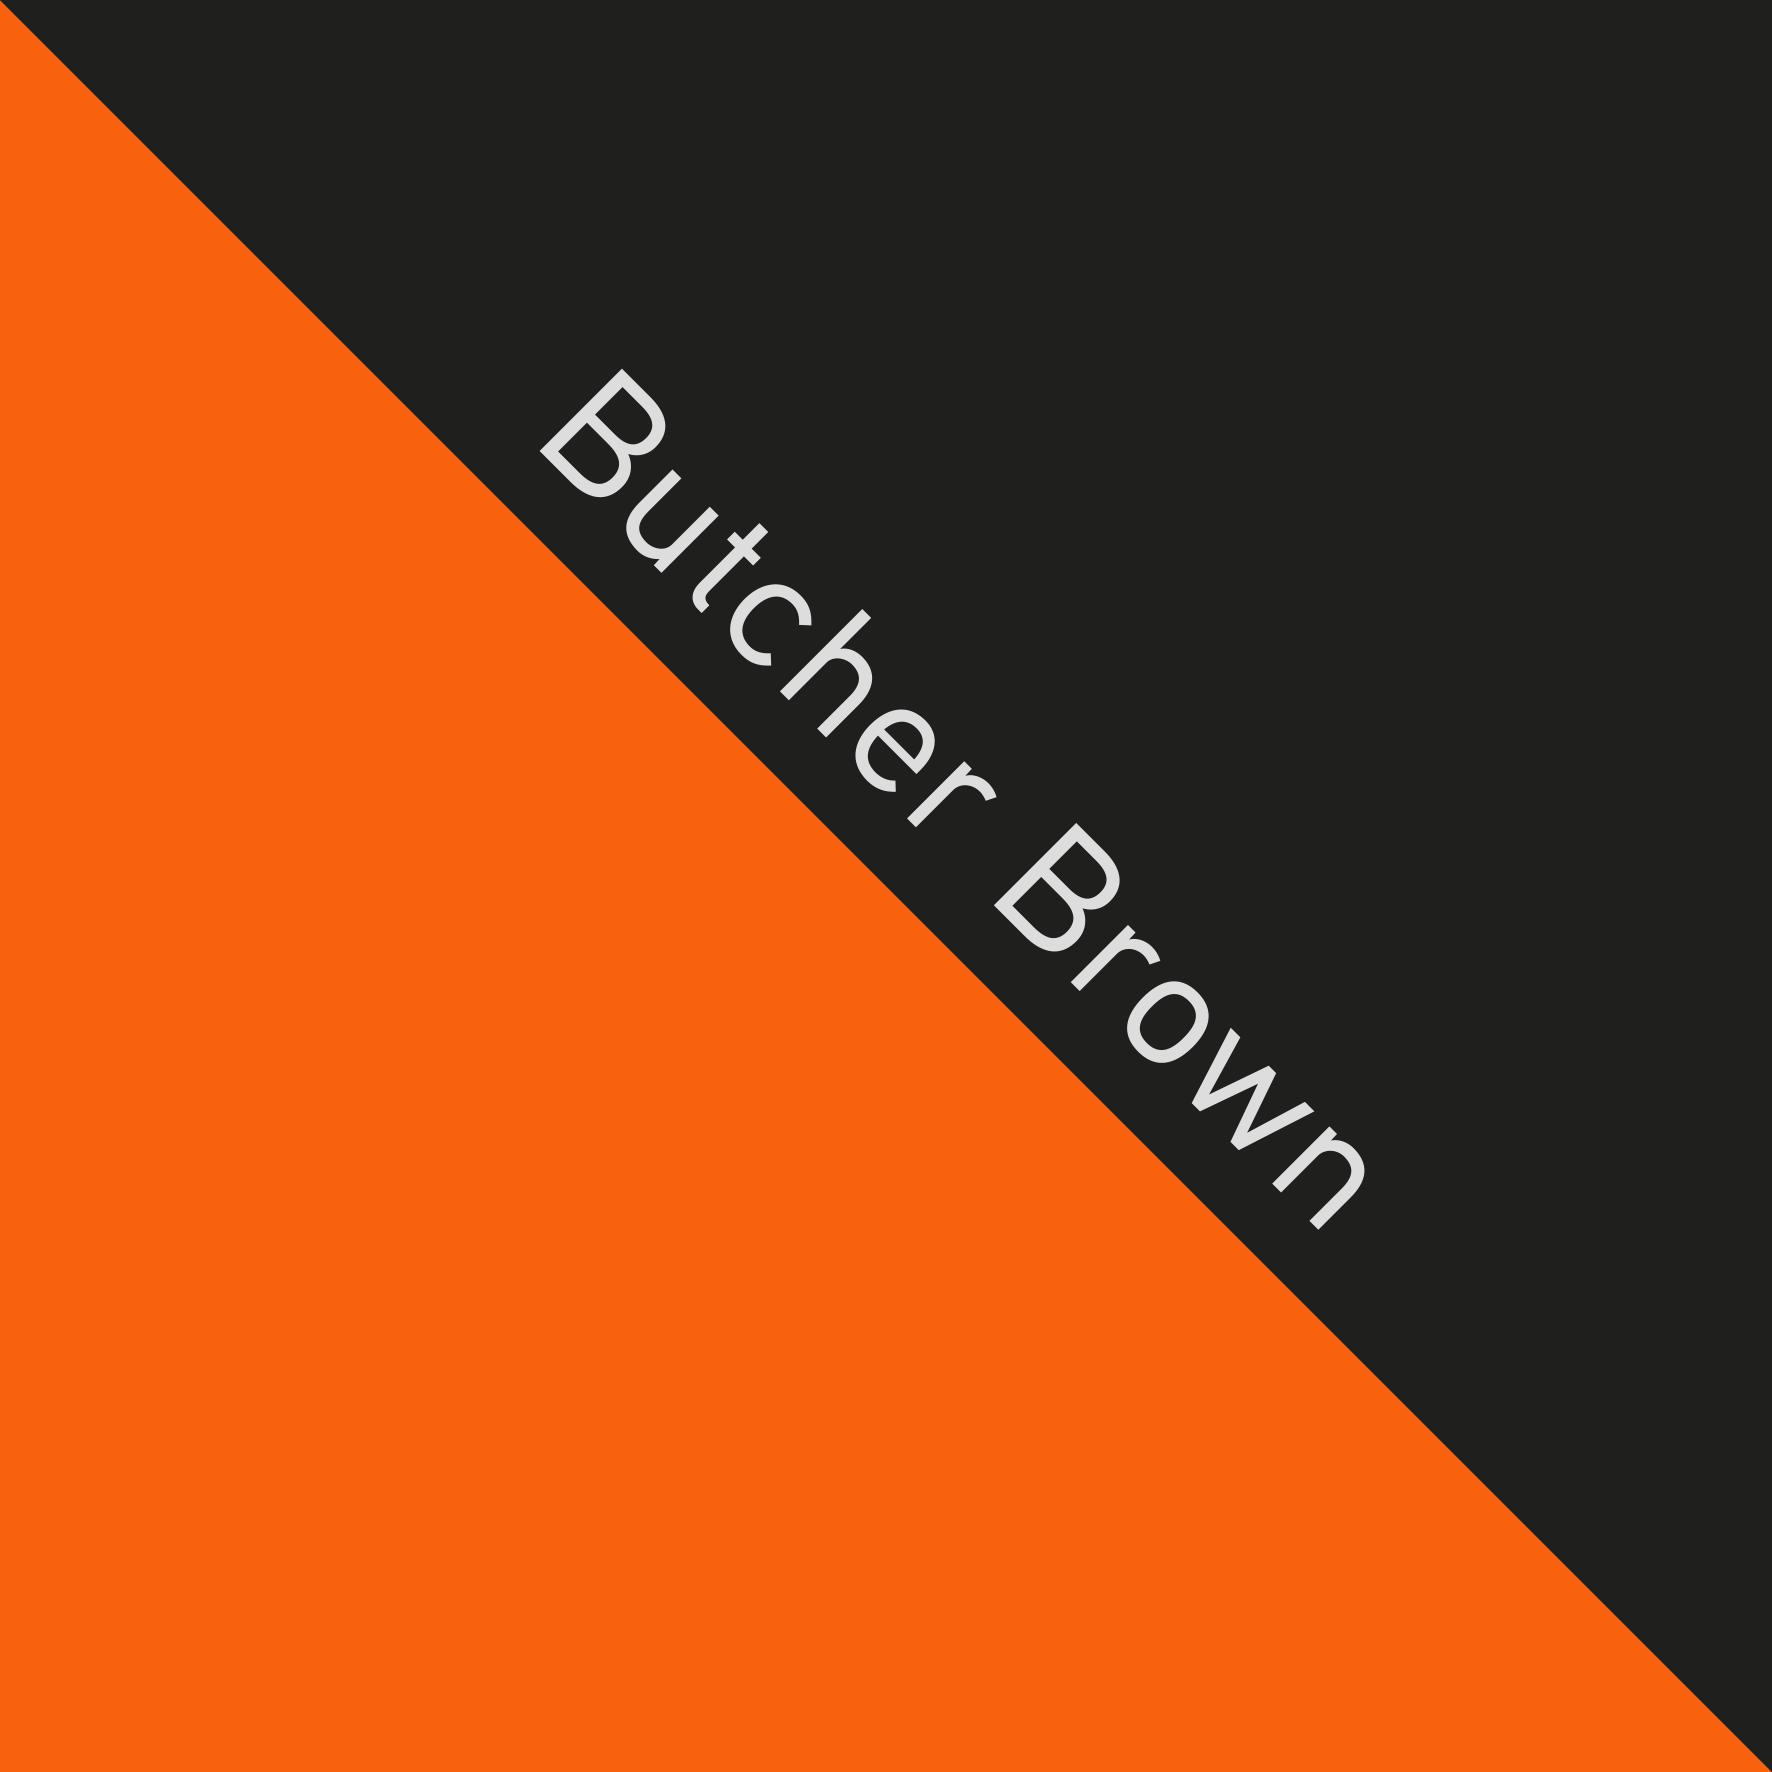 ButcherBrown_nc_01.gif